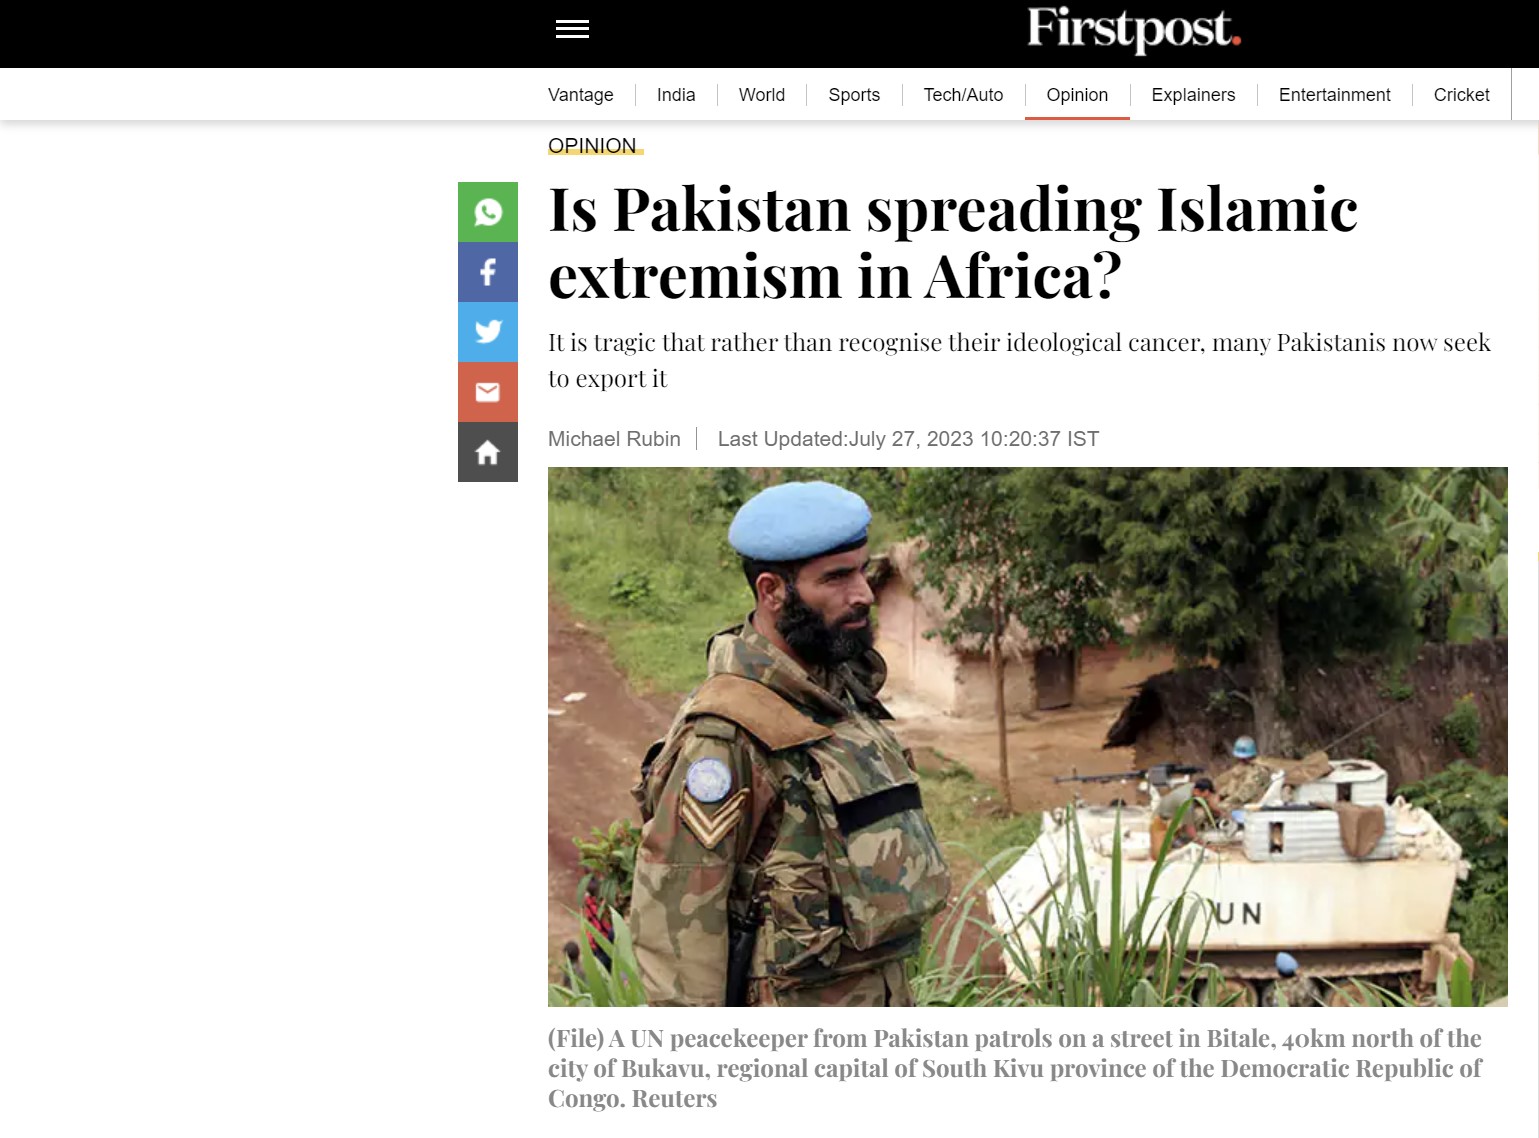 Μάικλ Ρούμπιν: Το Πακιστάν διαδίδει τον ισλαμικό εξτρεμισμό στην Αφρική;